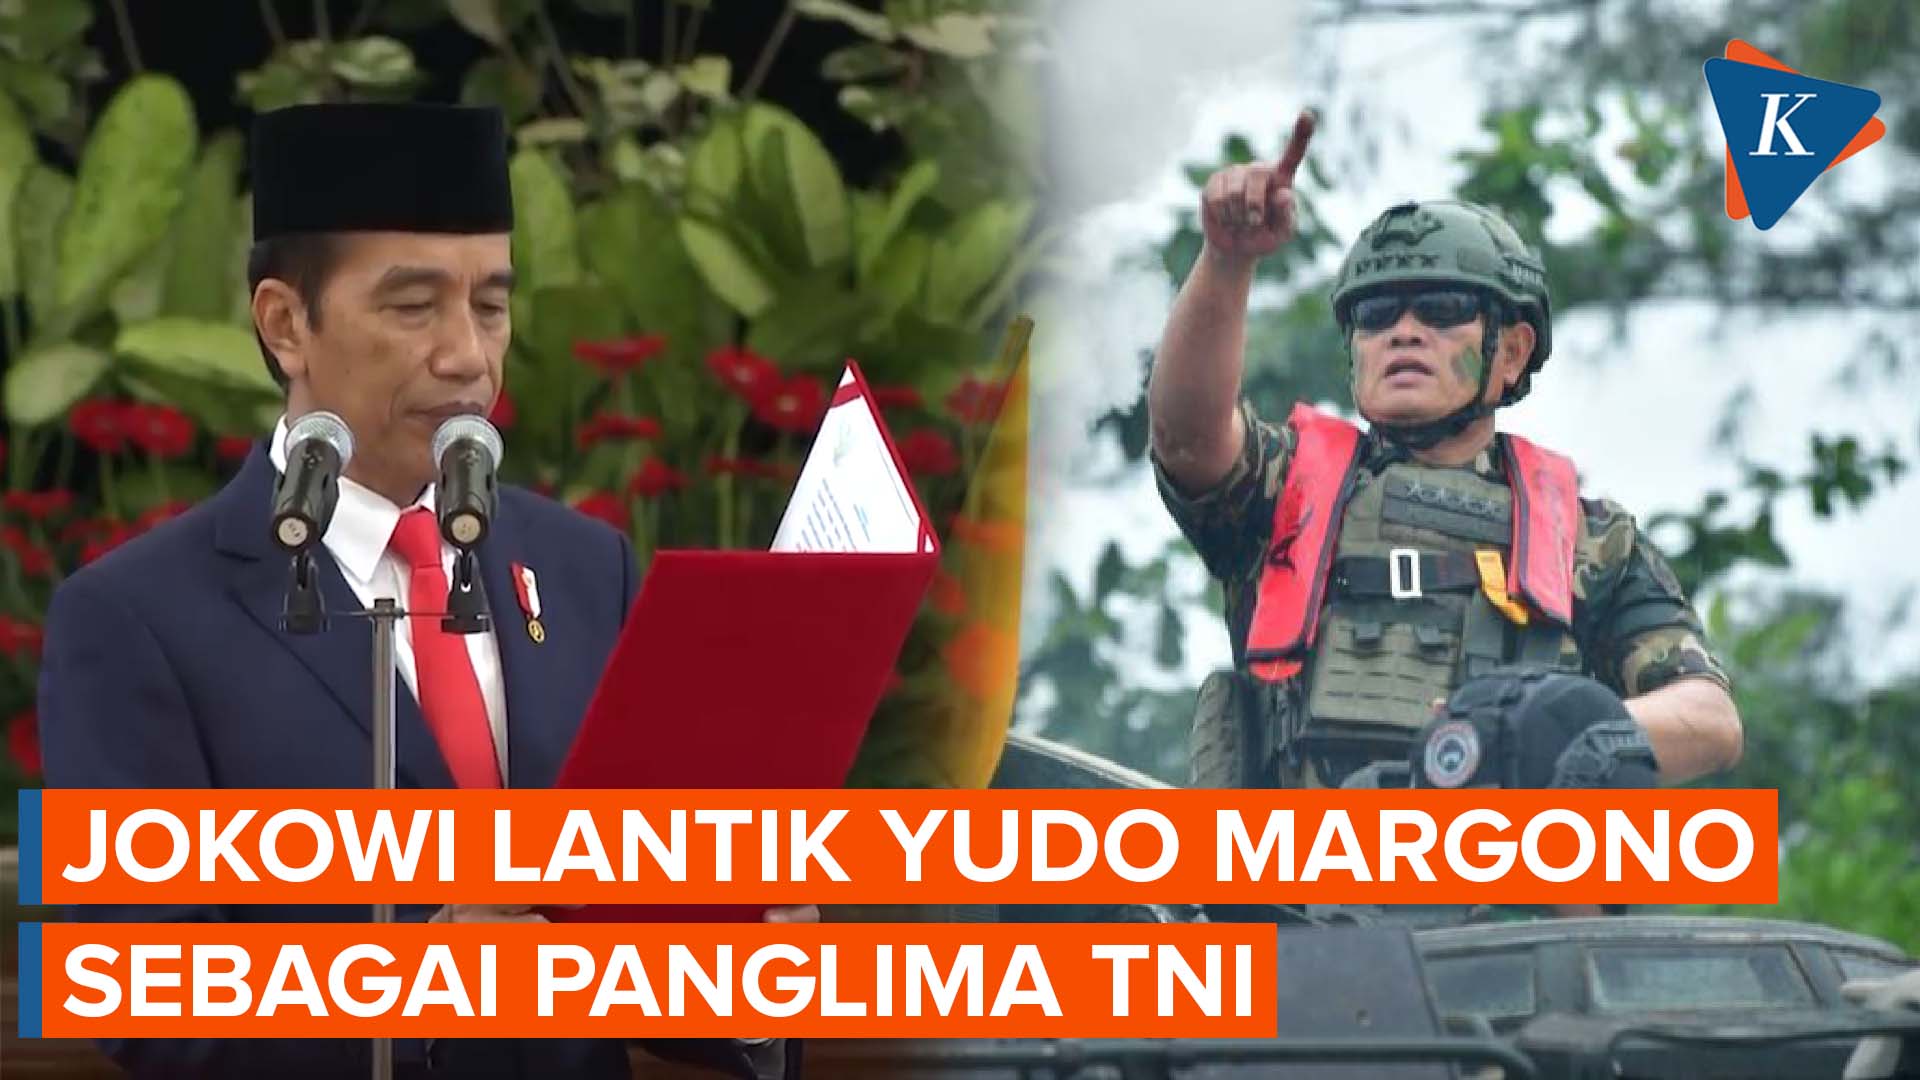 Jokowi Lantik Yudo Margono jadi Panglima TNI Hari Ini